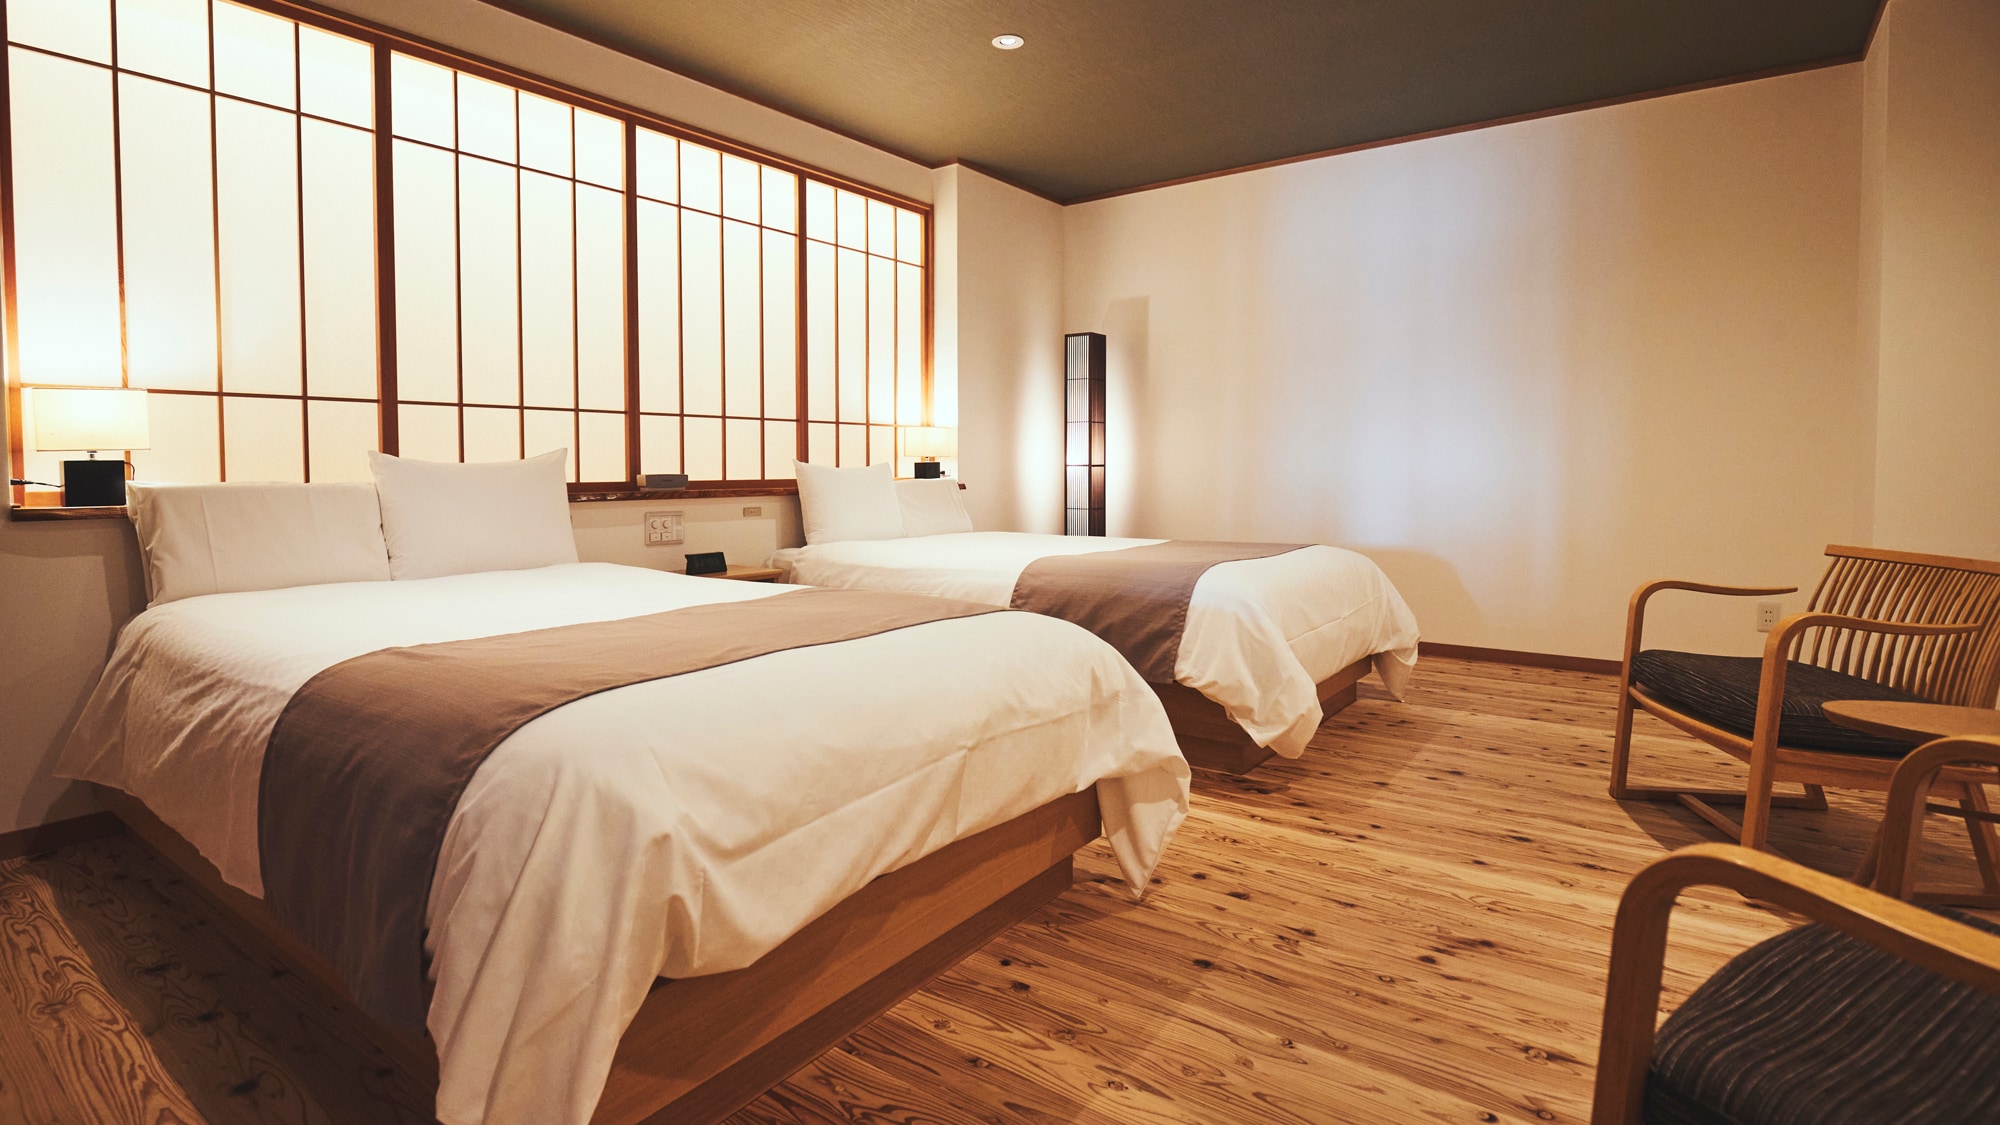 卧室地板使用“隔音老化木材”。充分发挥“活树”的原始力量的舒适空间。